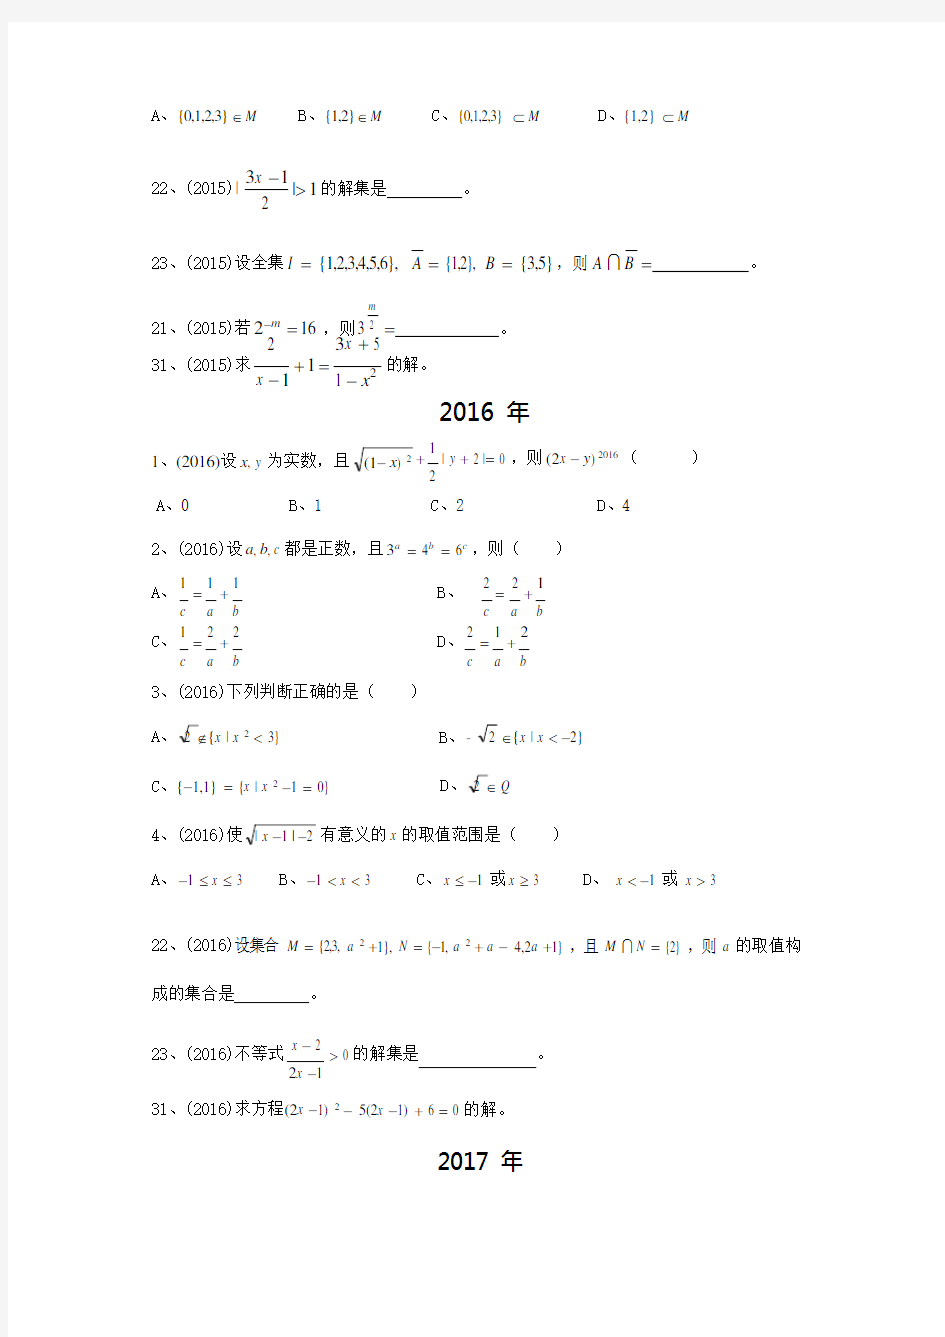 2014-2018年云南省三校生高考数学试题章节分析doc(可编辑修改word版)